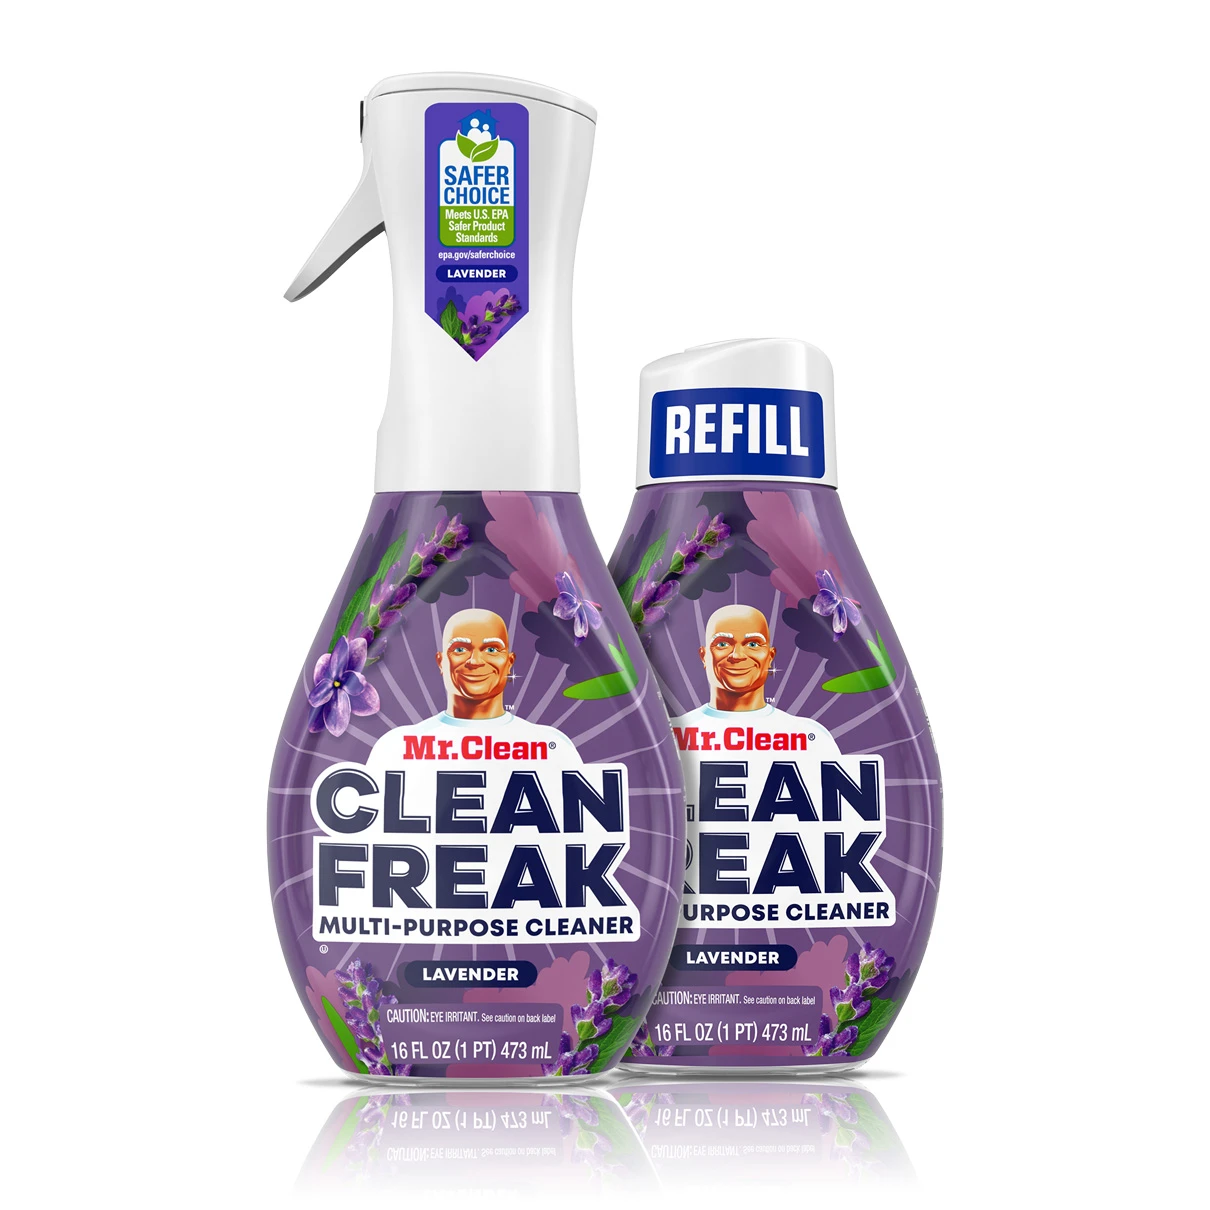 Mr. Clean Clean Freak 